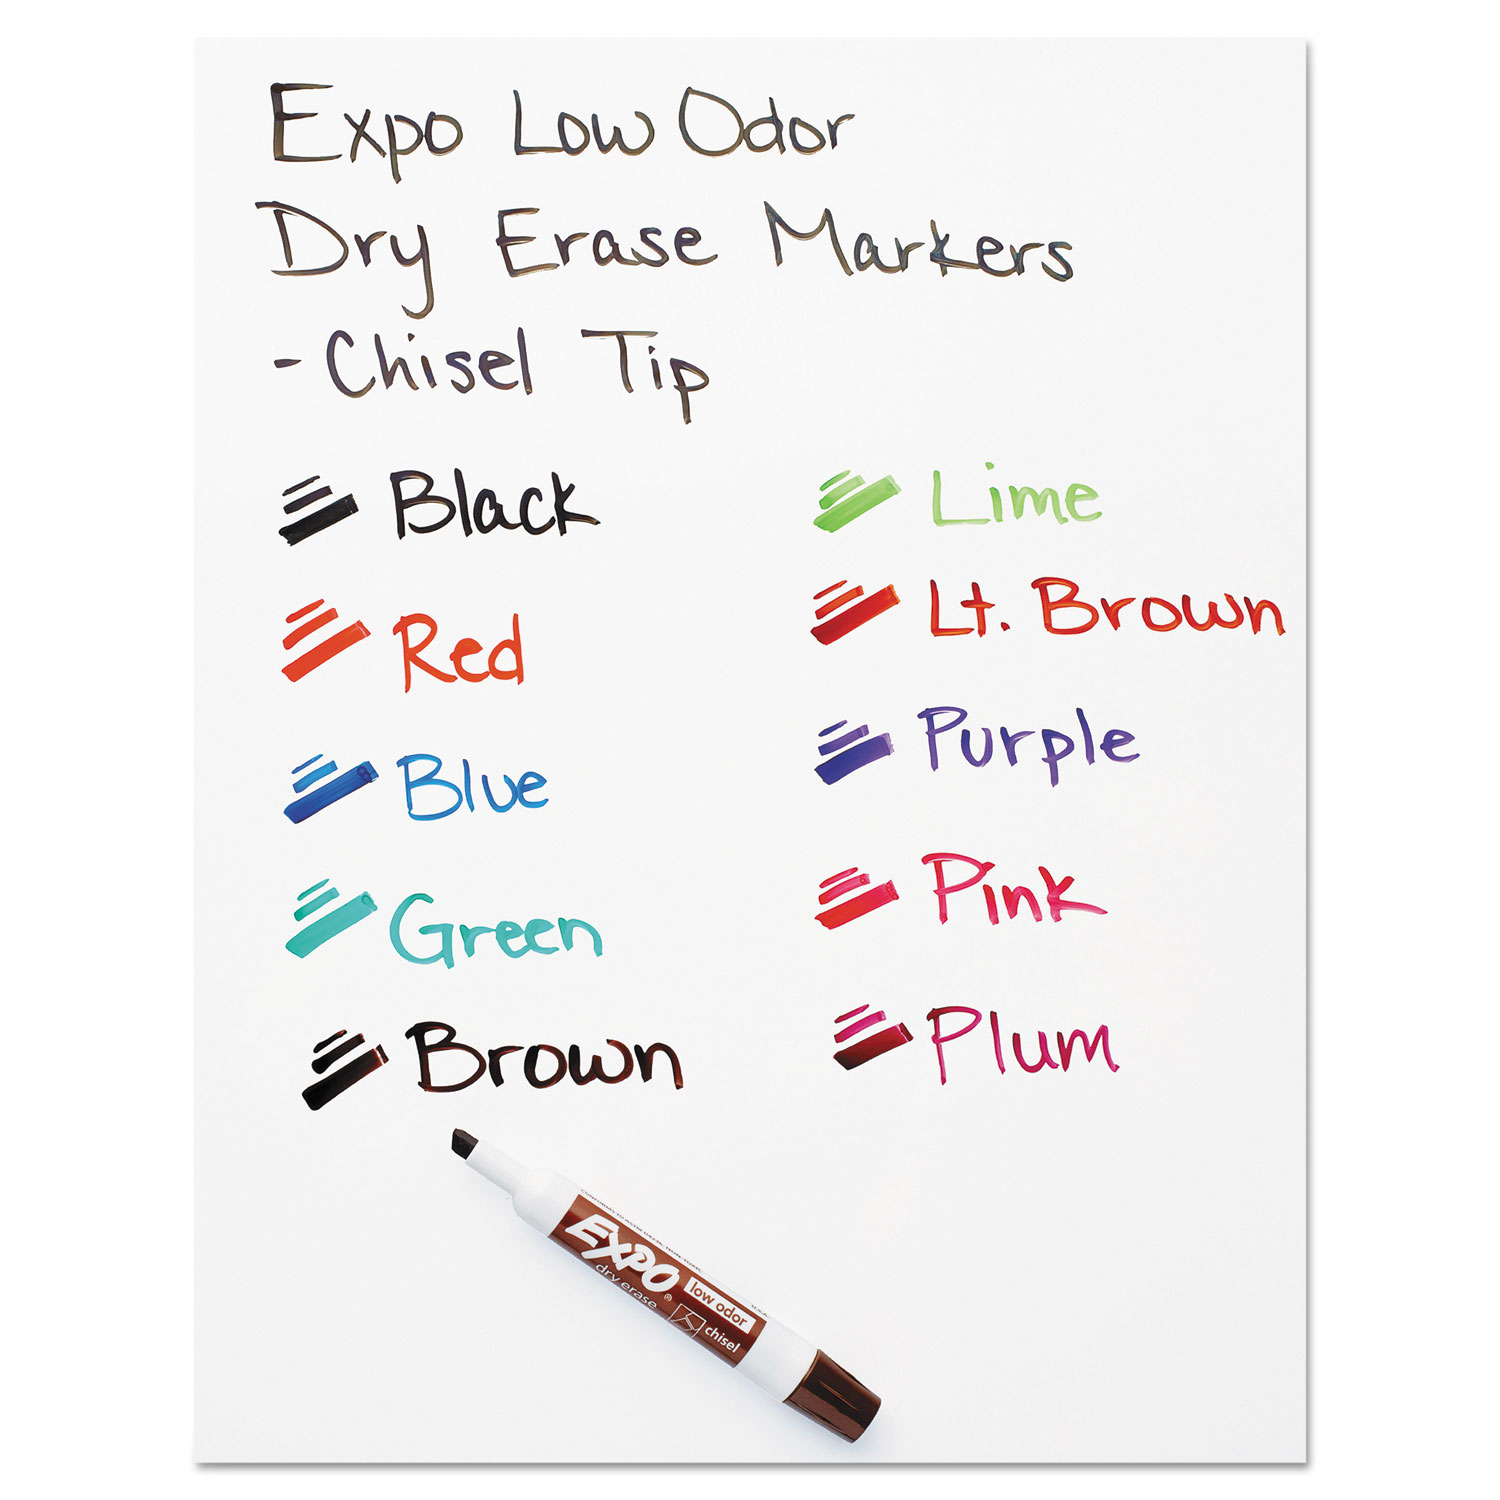 Low-Odor Dry-Erase Marker, Broad Chisel Tip, Black, Dozen - Western  Stationers